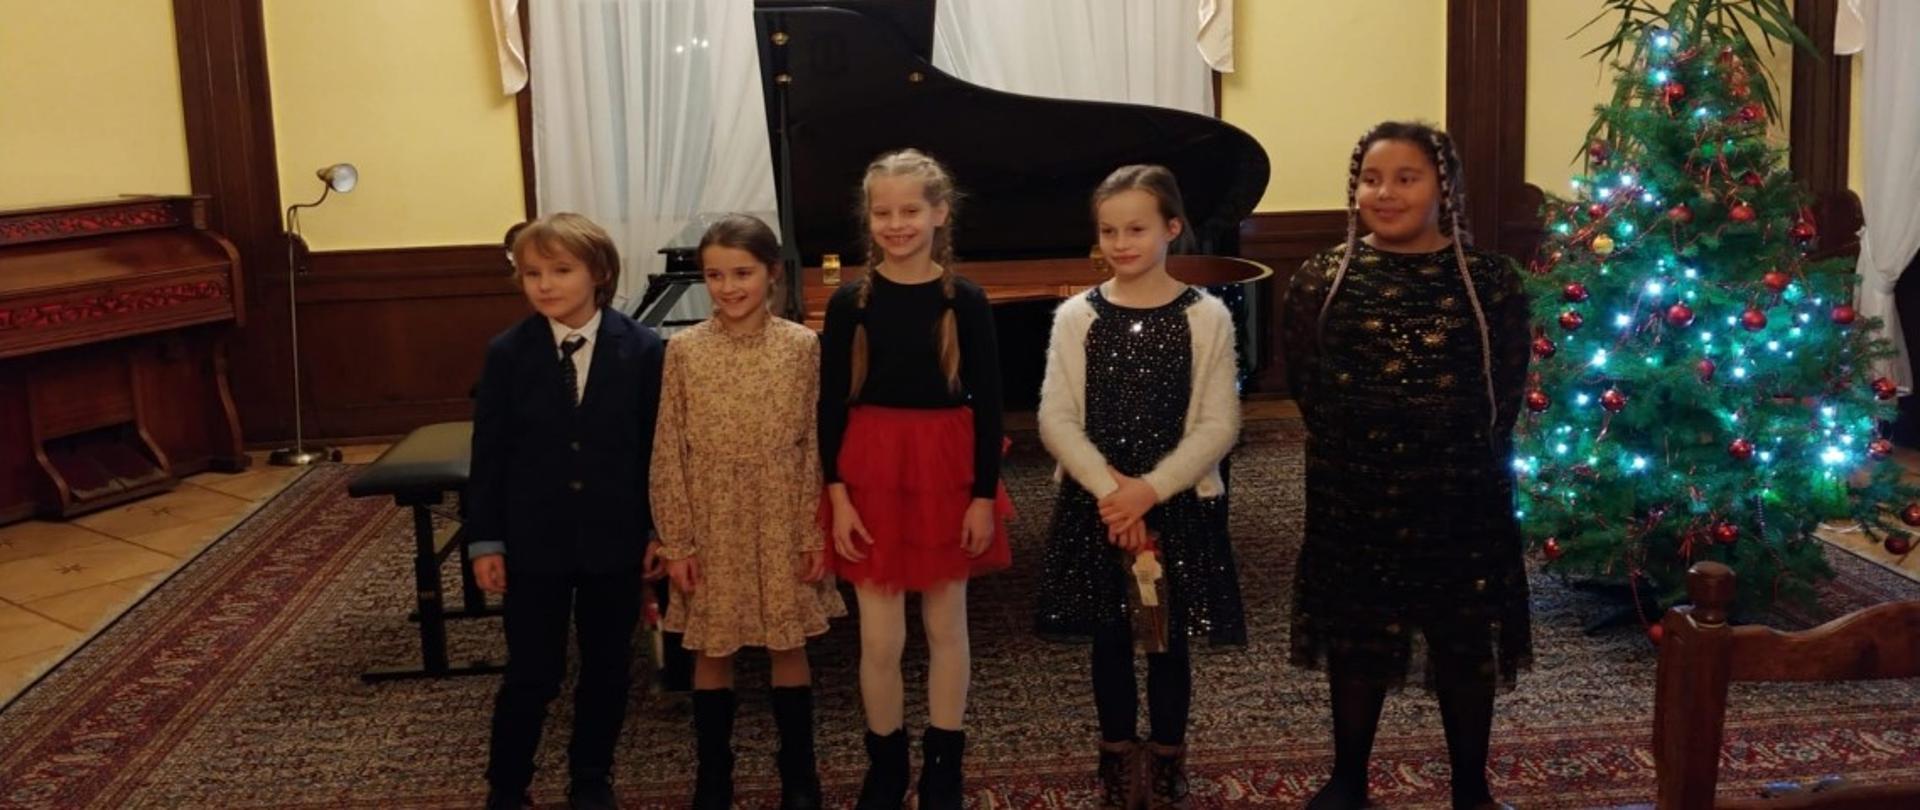 Zdjęcie kolorowe. Uczestnicy konkursu - dzieci w strojach galowych stoją na tle fortepianu w sali kameralnej Państwowej Szkoły Muzycznej I i II stopnia w Słupsku. Z prawej strony choinka.